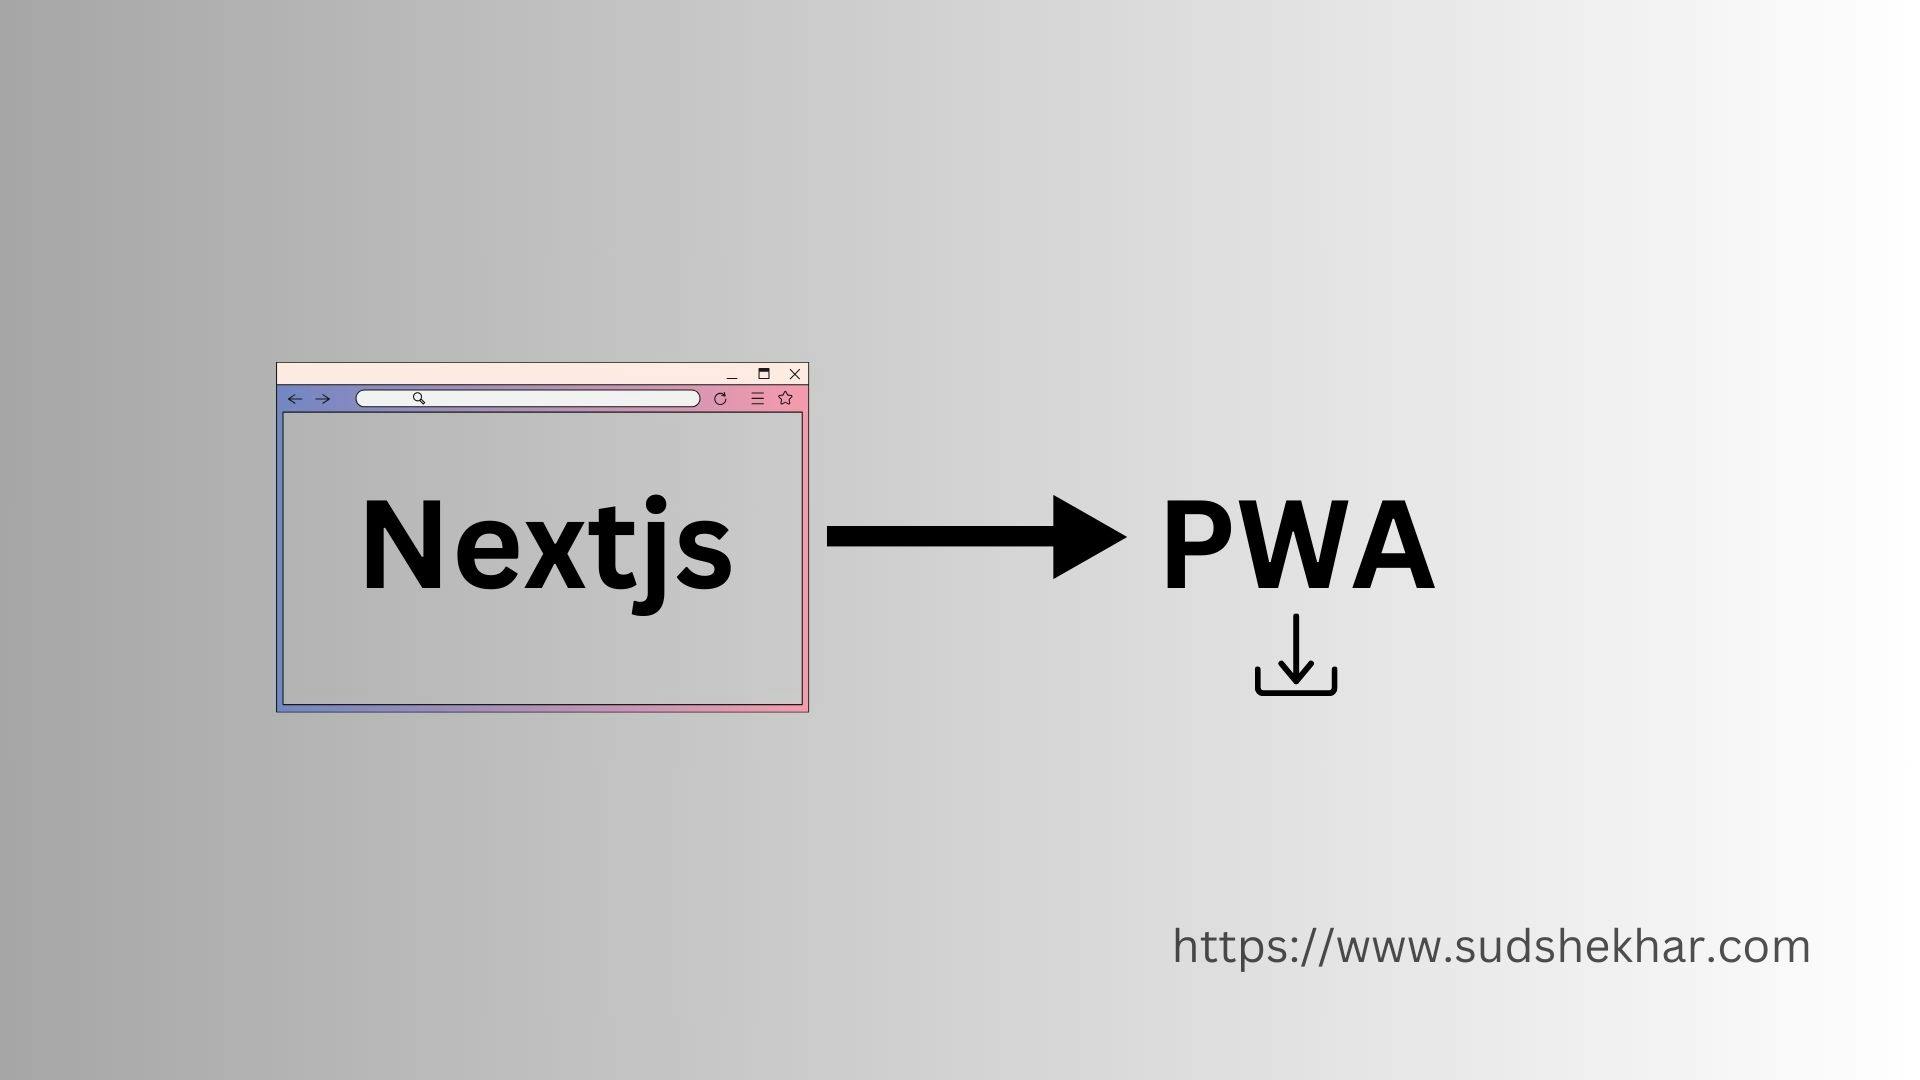 How to convert Nextjs to PWA (Progressive Web App)?